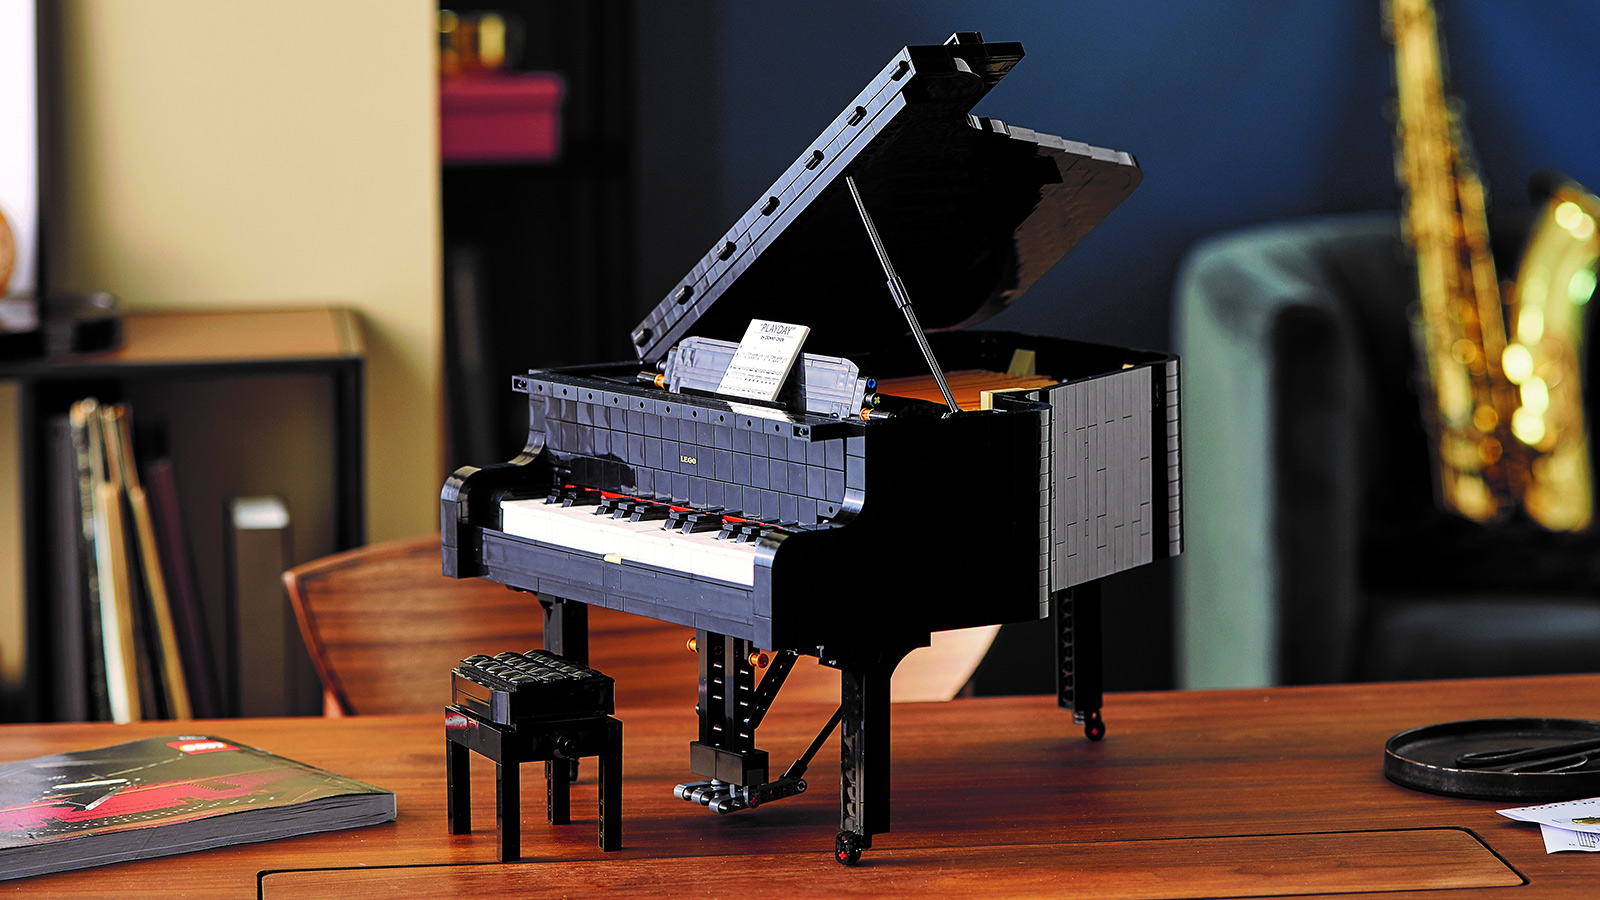 LEGO Ideas Grand Piano